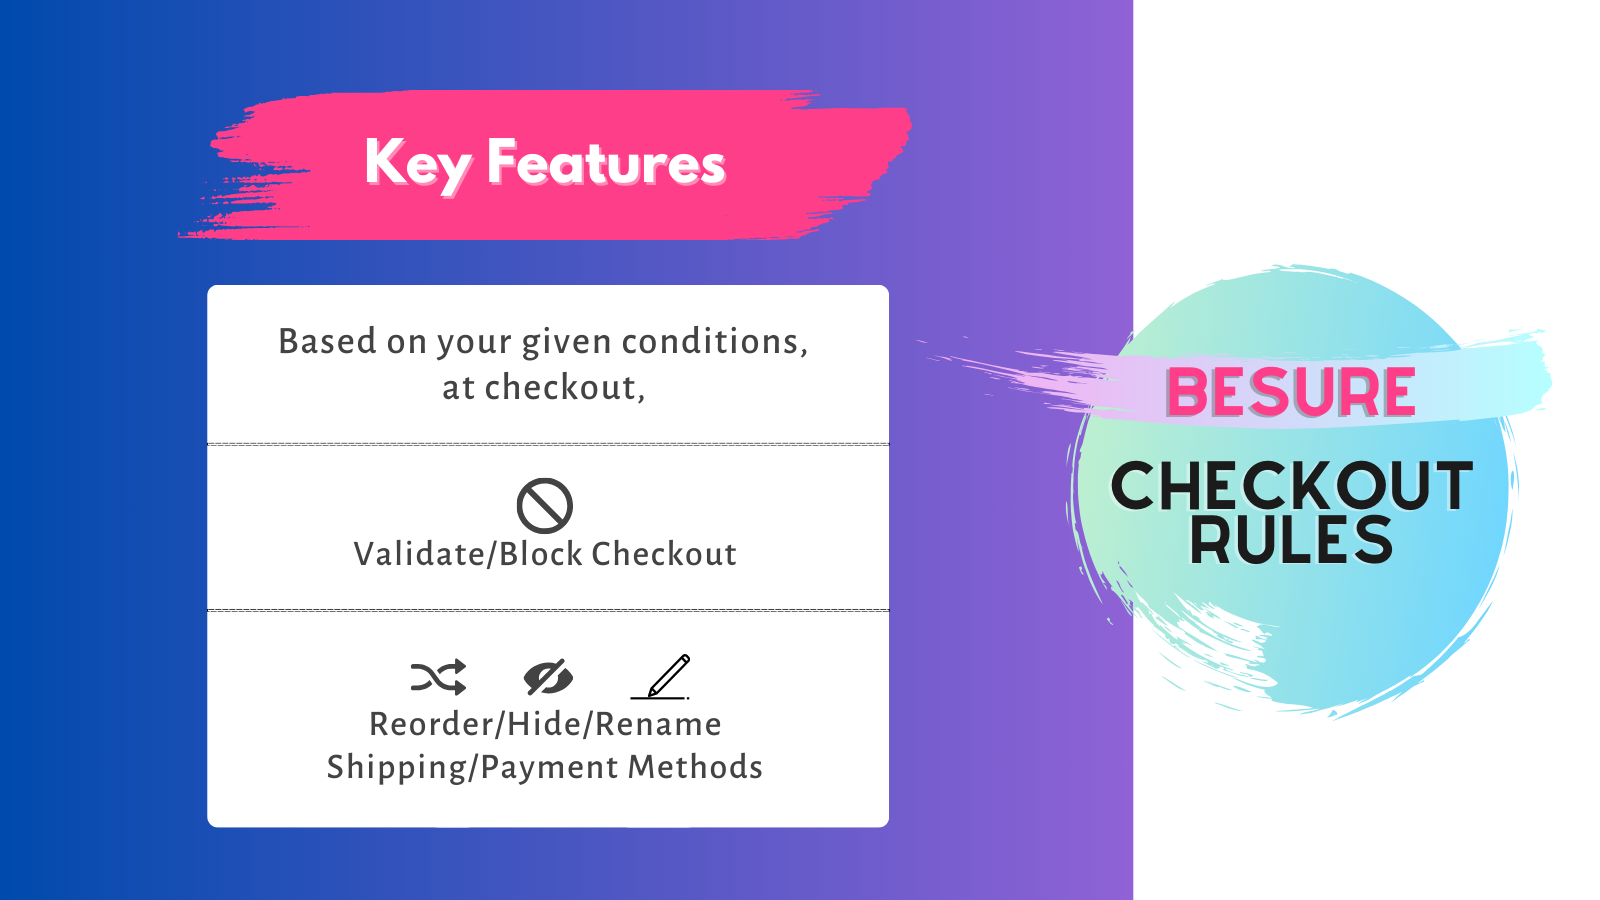 Belangrijkste kenmerken van de checkout rules app